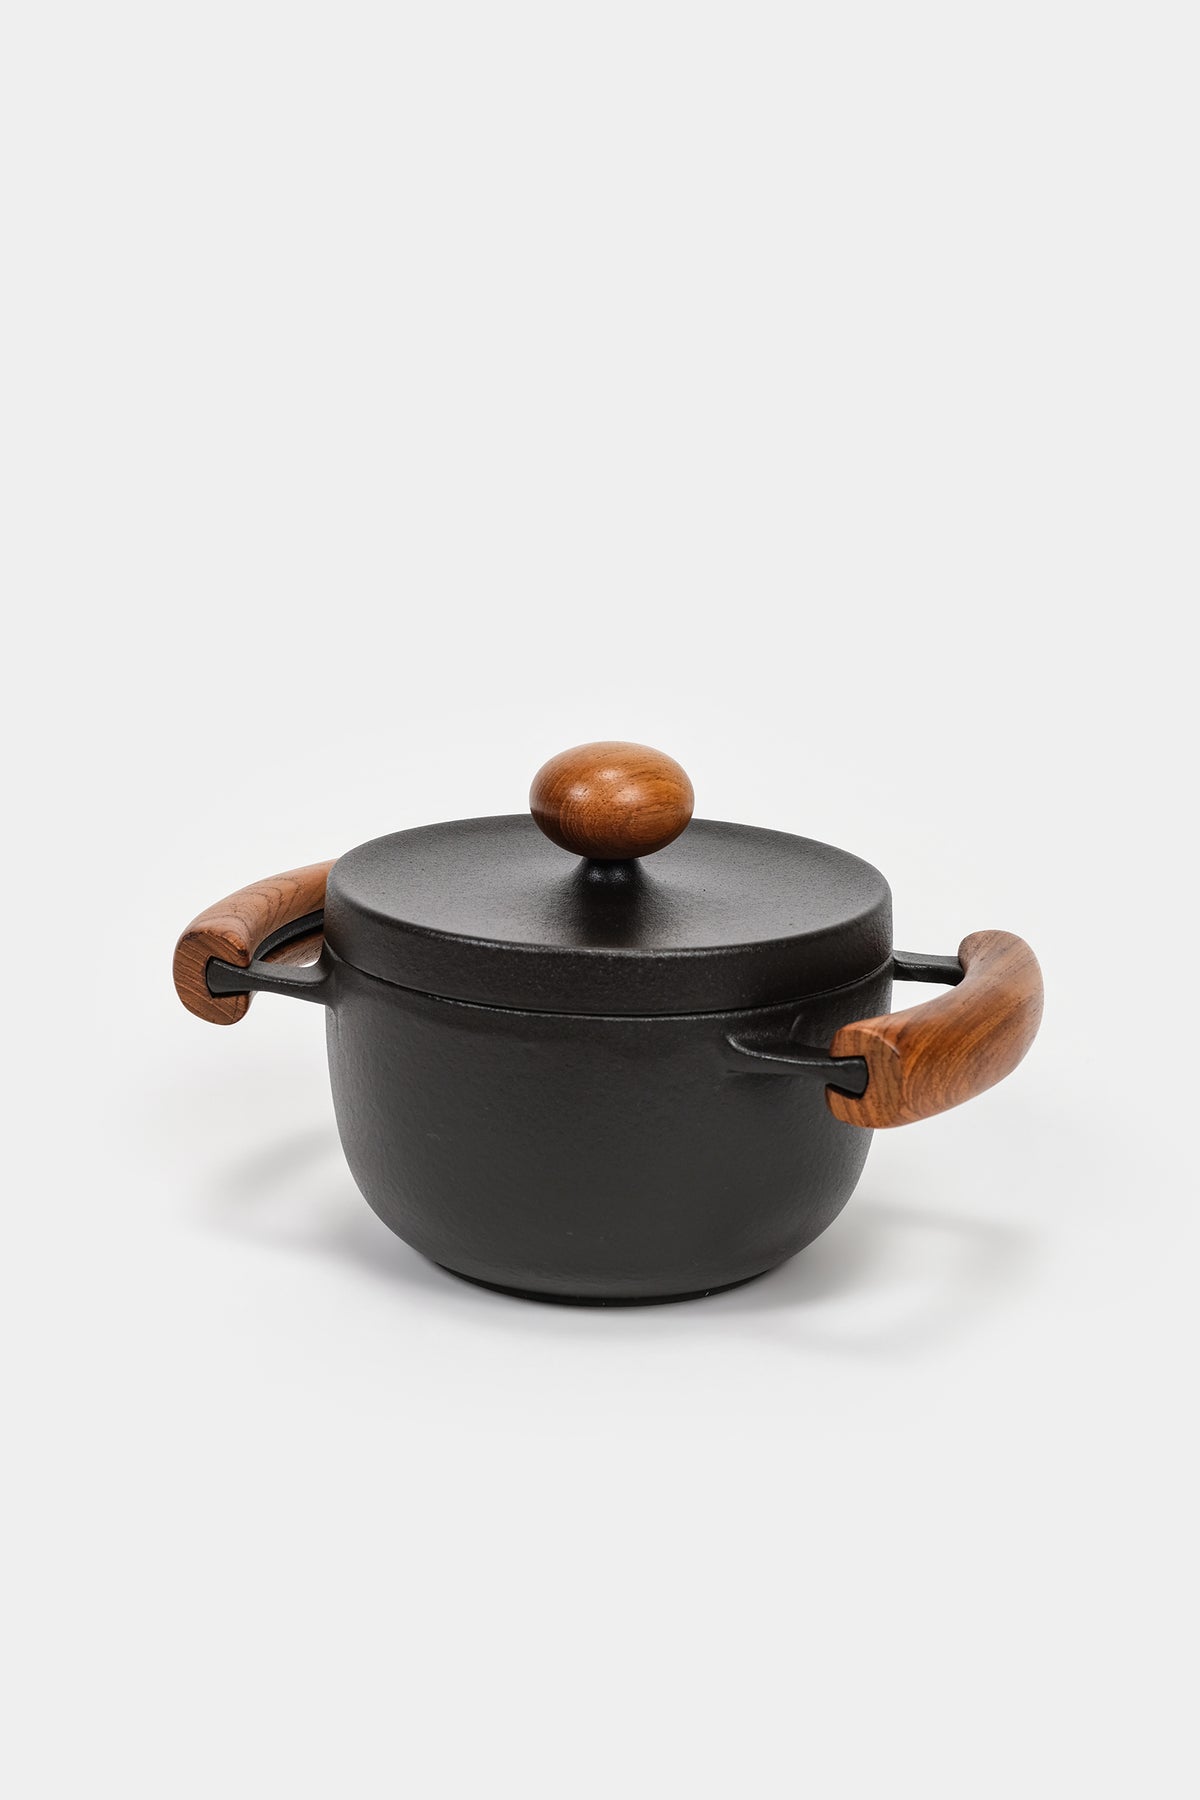 Richard Nissen, Pot made of cast iron, Denmark, 60s